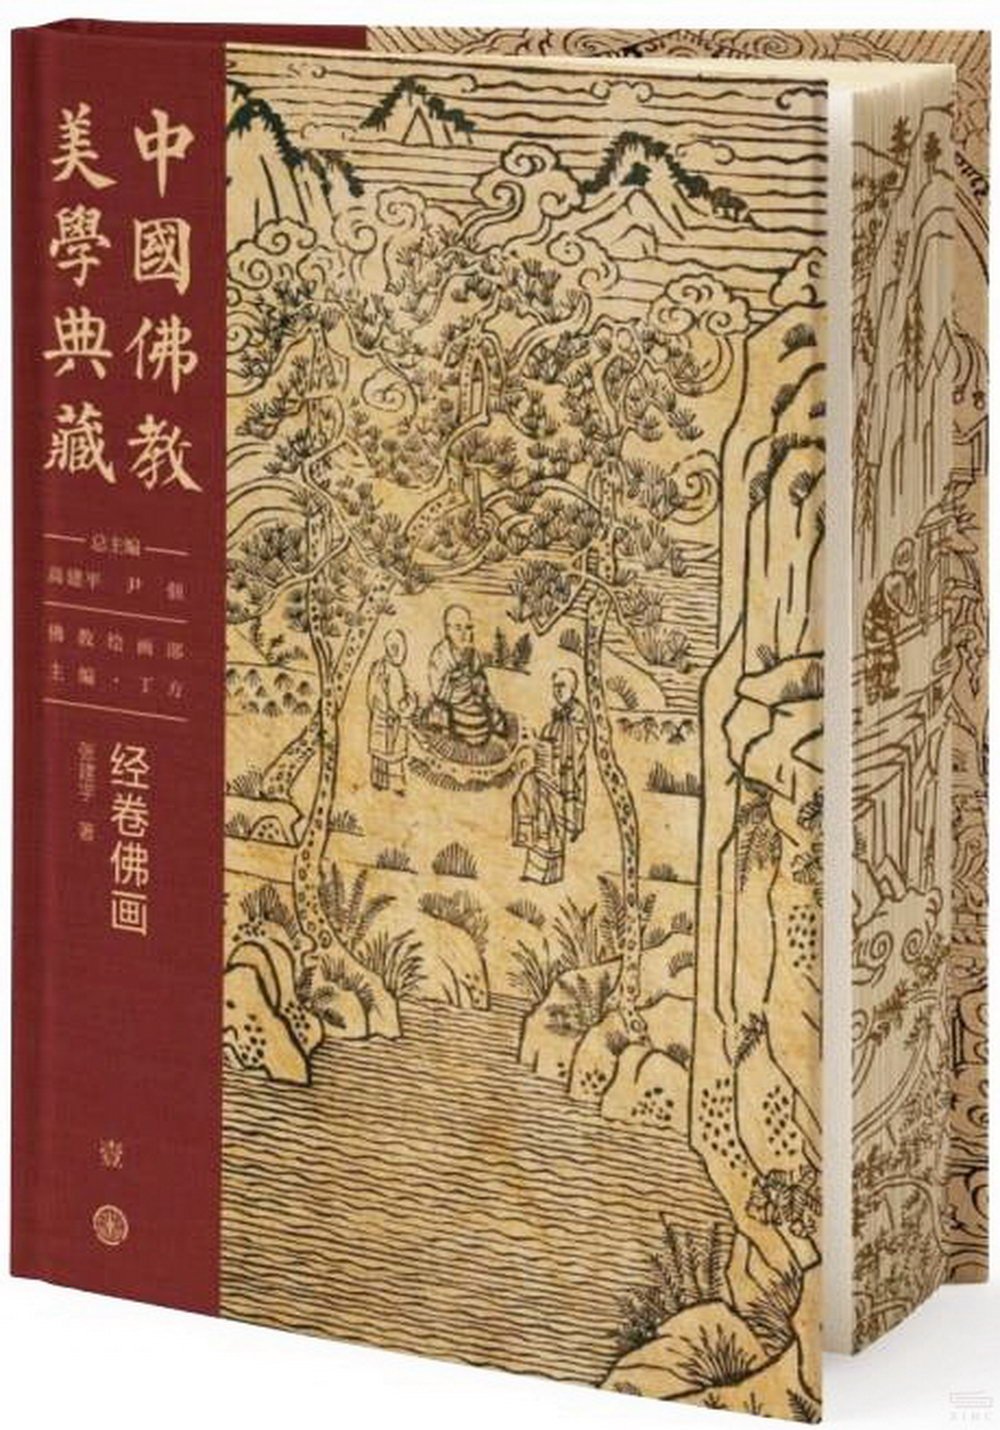 中國佛教美學典藏（壹）（佛教繪畫部）：經卷佛畫